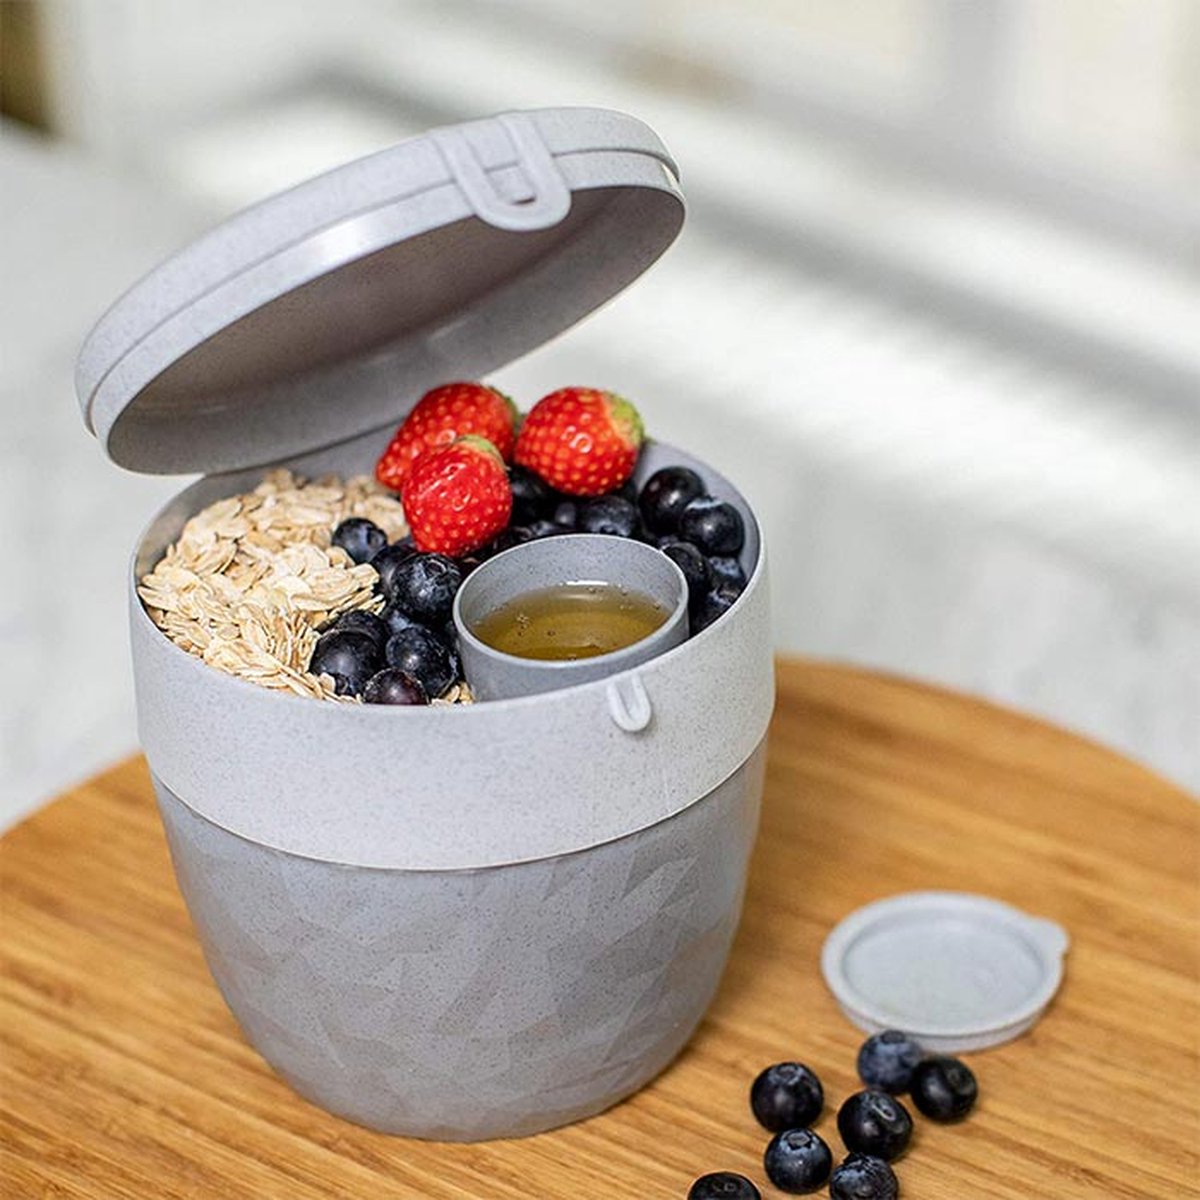 Koziol – Lunchbox / Lunchpot 1.0L – Praktische muesli / Salade beker to go - 3 compartimenten – Geschikt voor vriezer, magnetron en vaatwasser